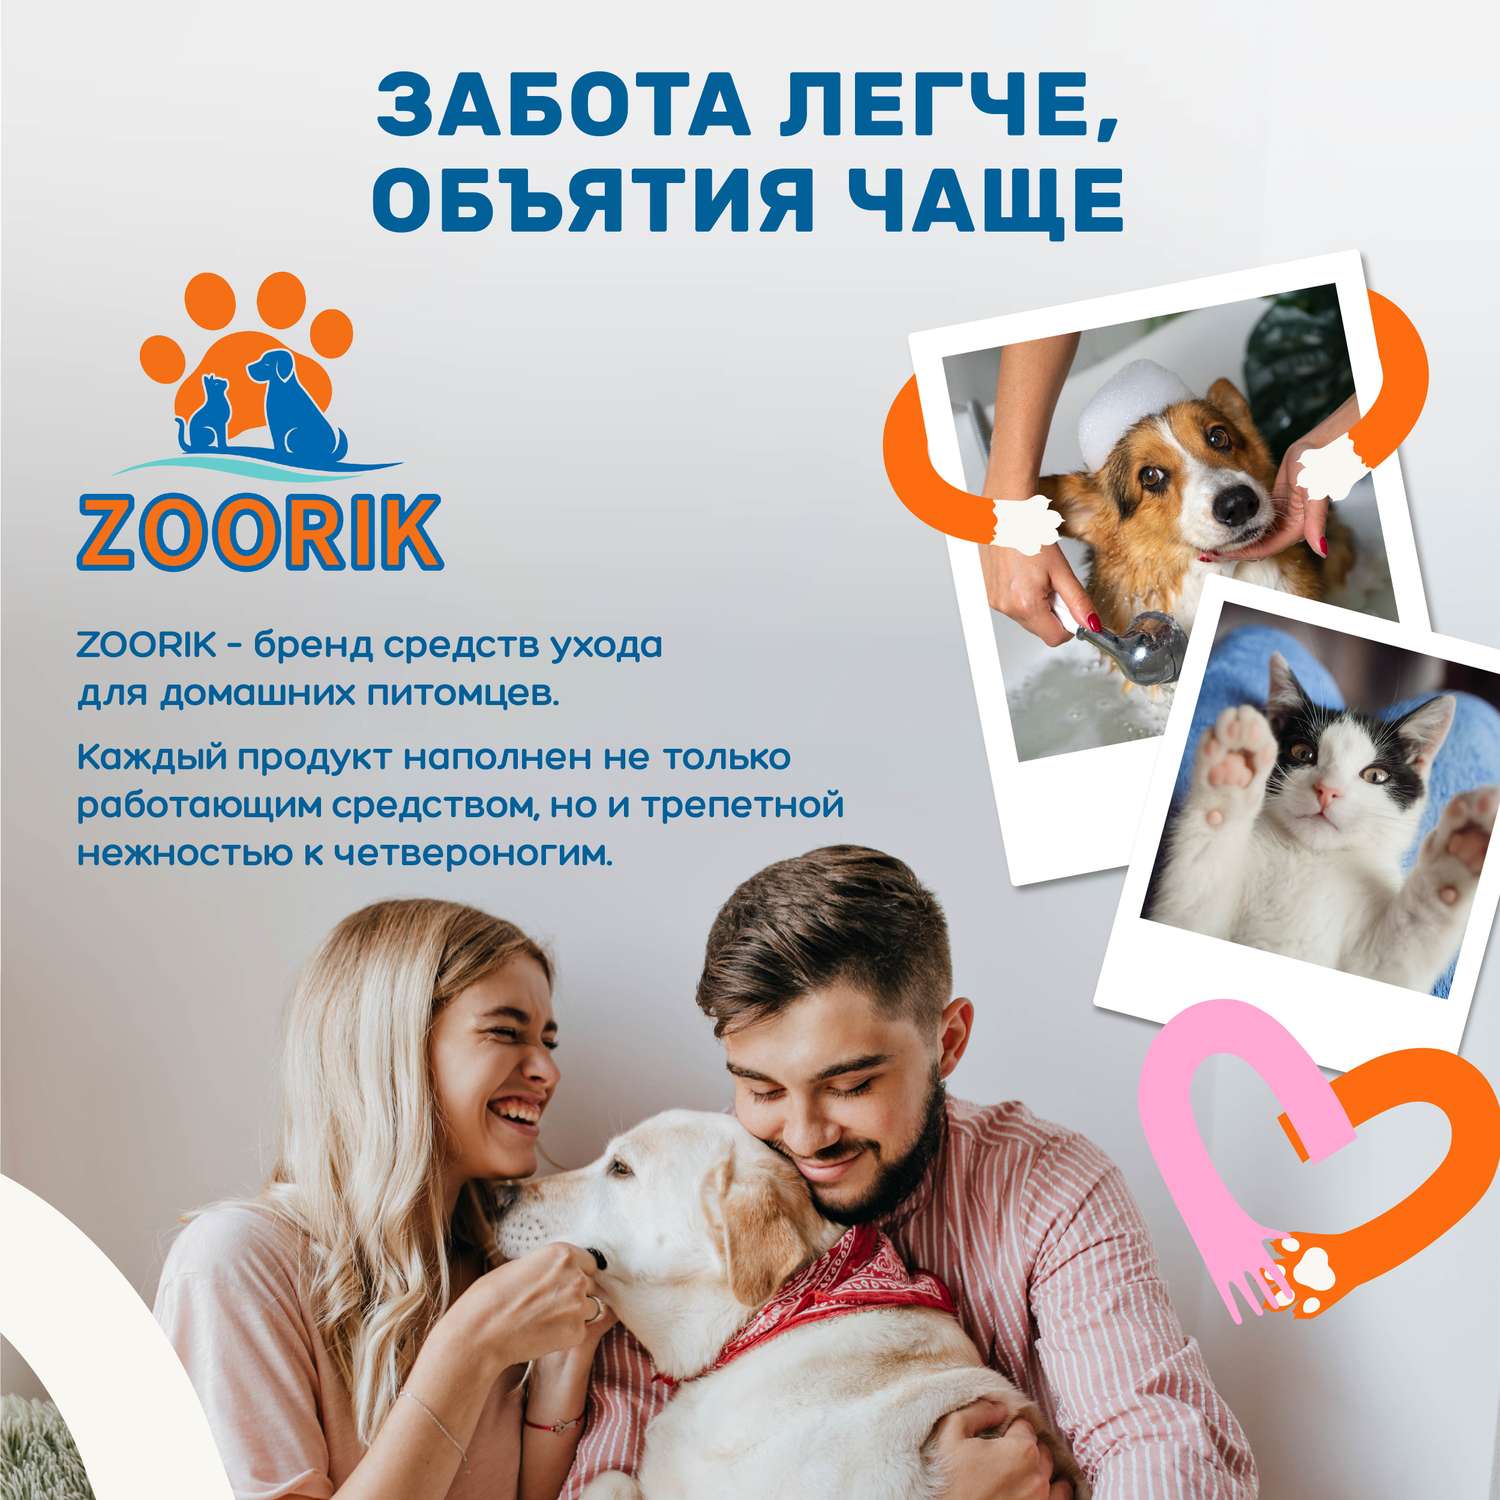 Шампунь ZOORIK для собак и кошек антибактериальный 250 мл - фото 10